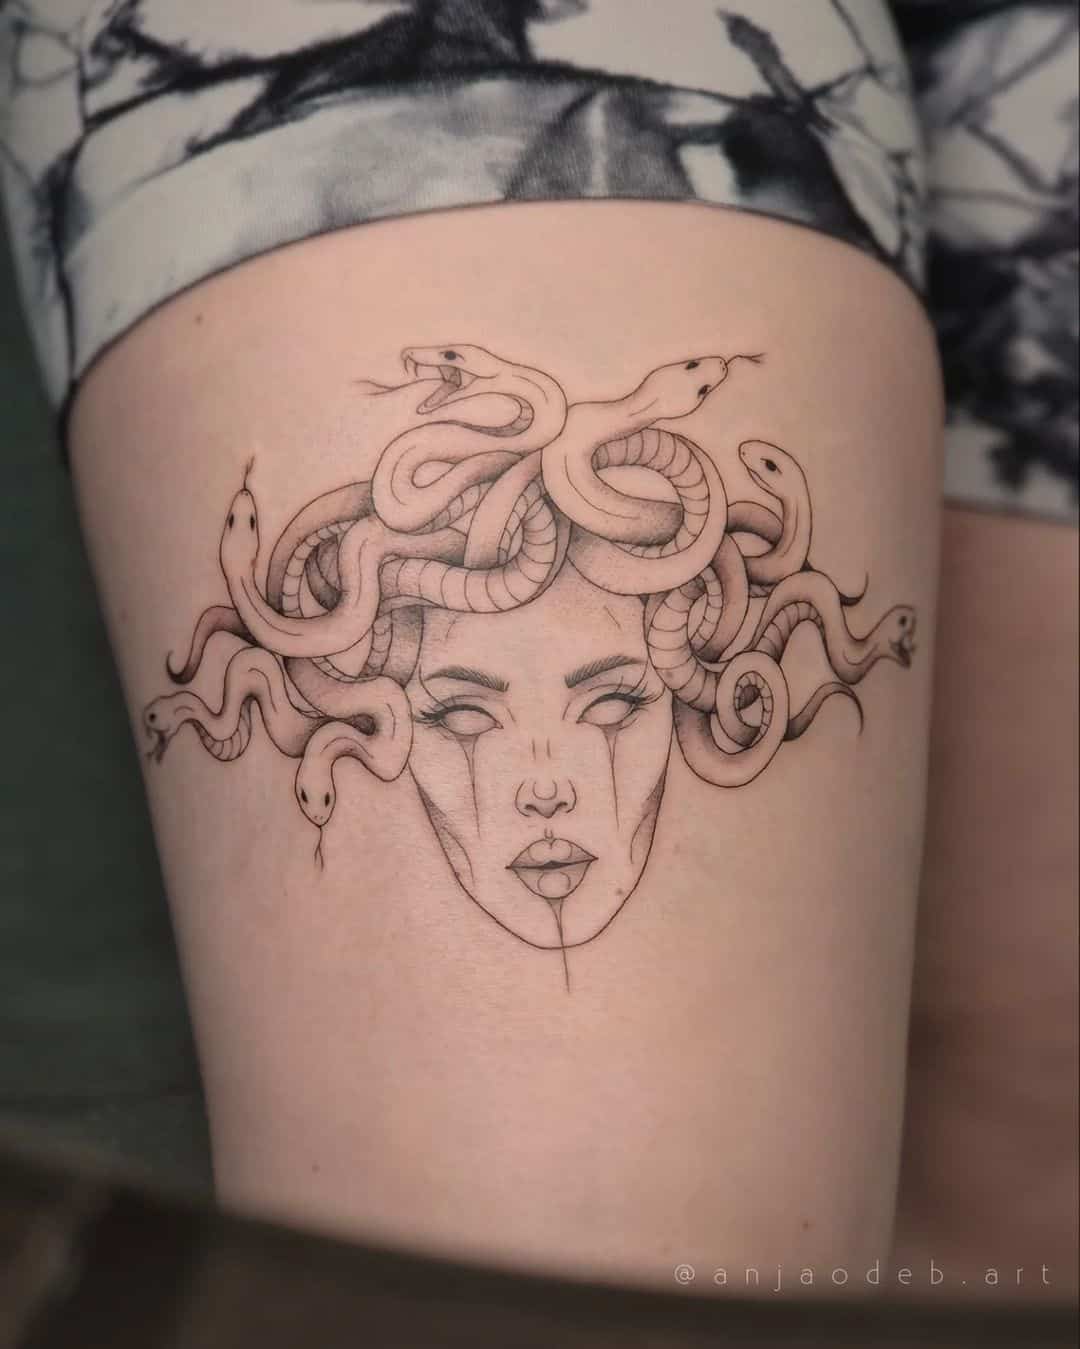 Minimalistic medusa tattoo by anjaodeb.art